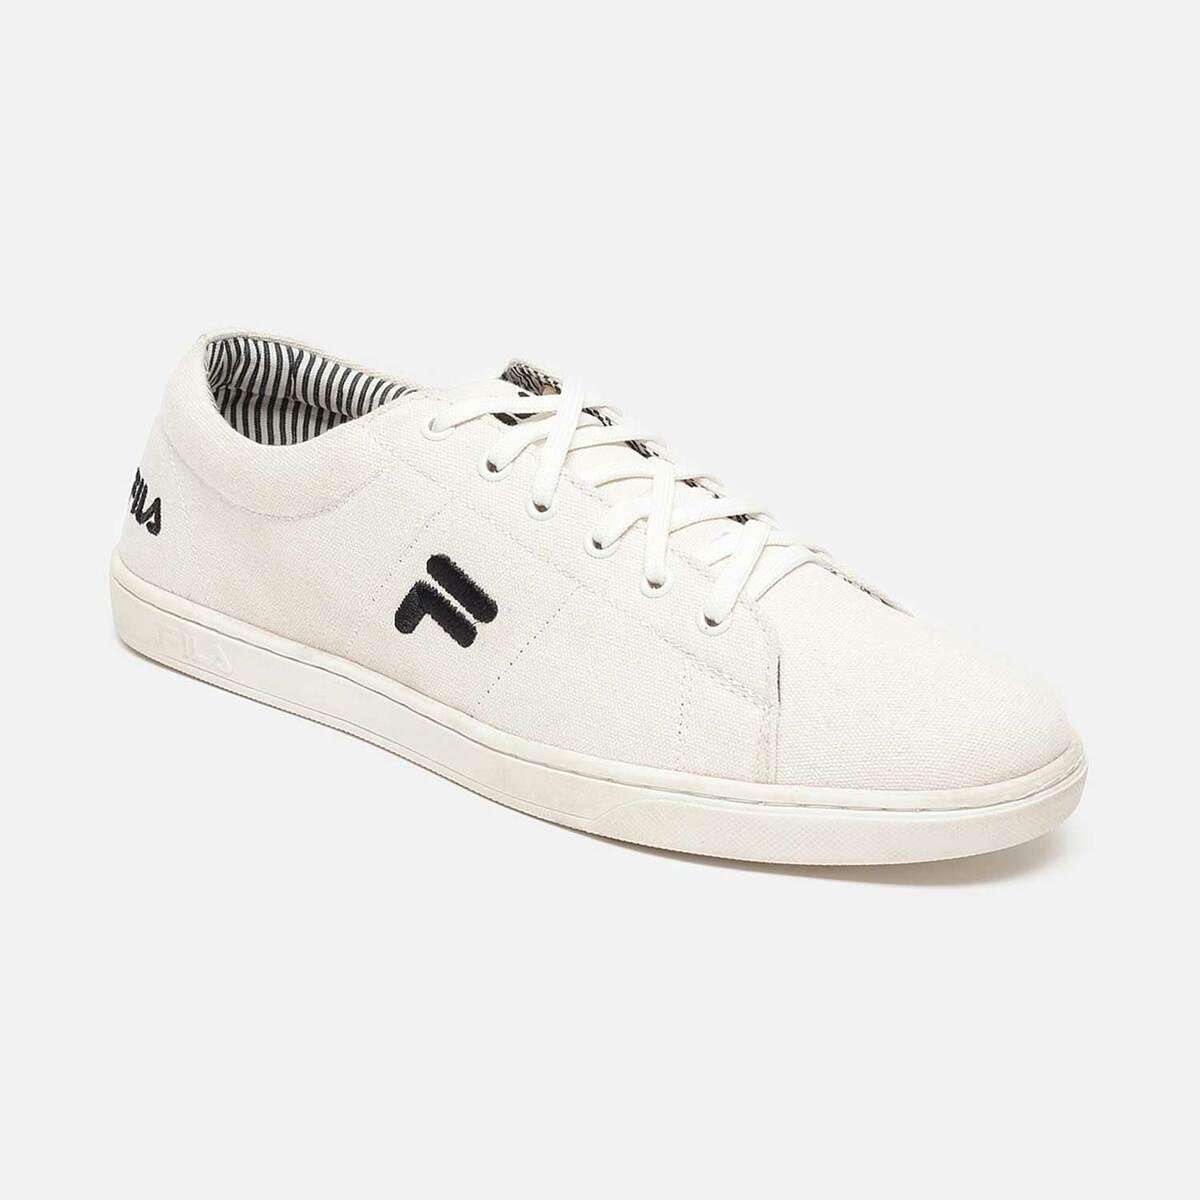 Sneaker Freaker Shop | Kicks shoes, Lacoste shoes, Mens casual shoes